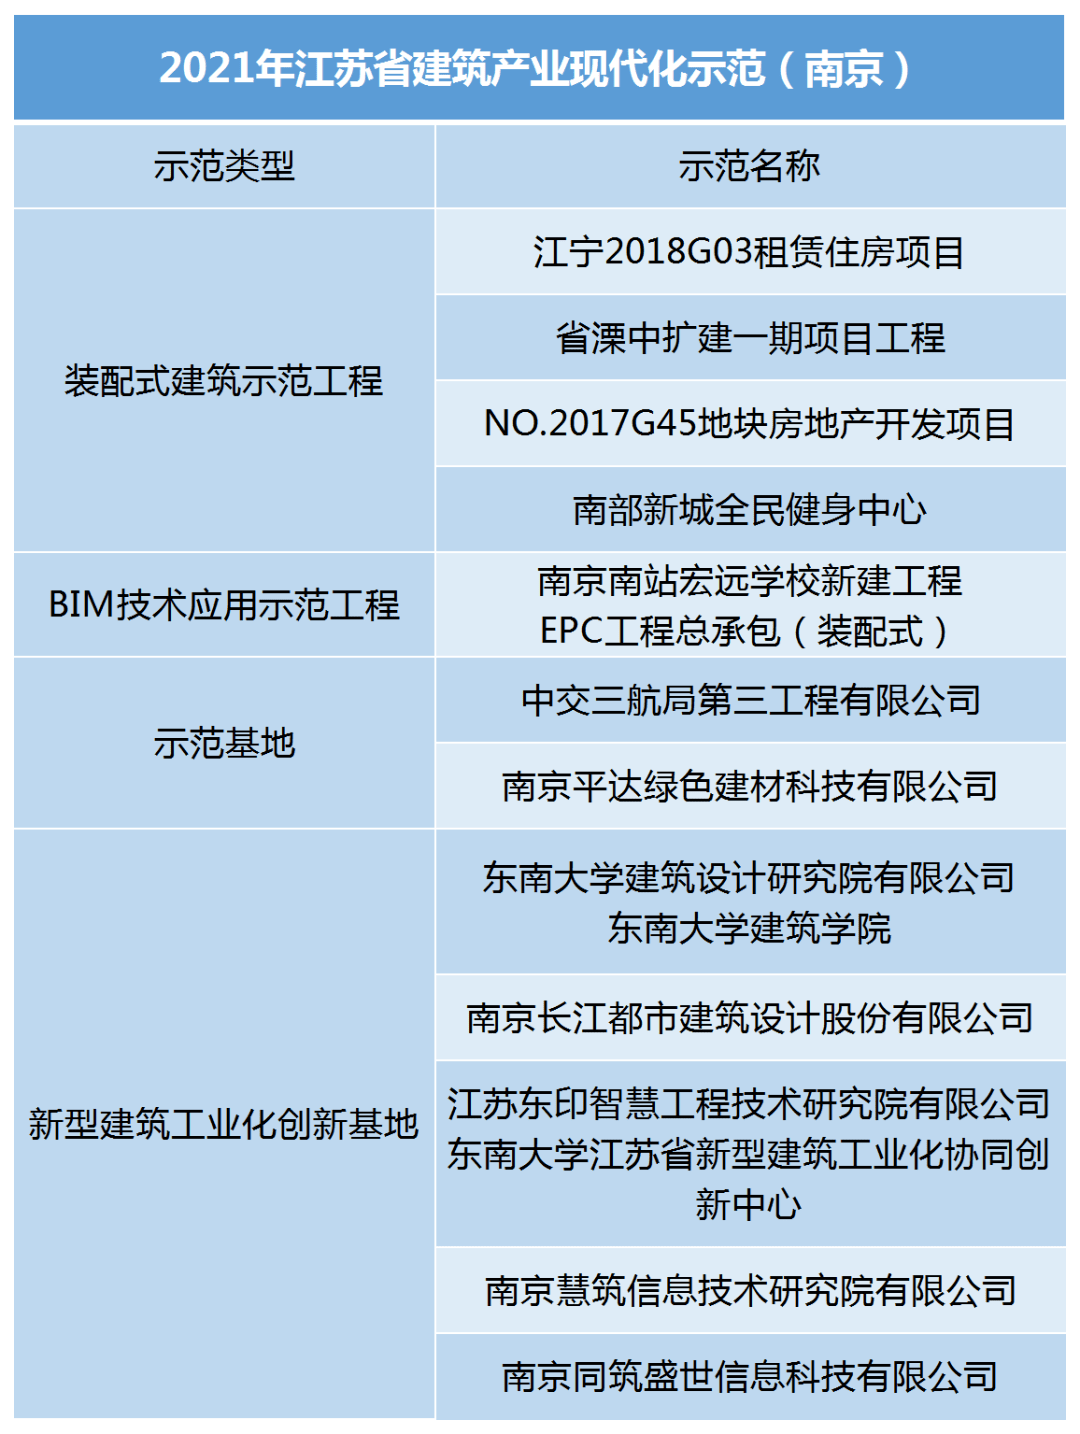 bim工程师考试条件及时间,南京bim工程师招生收费  第2张